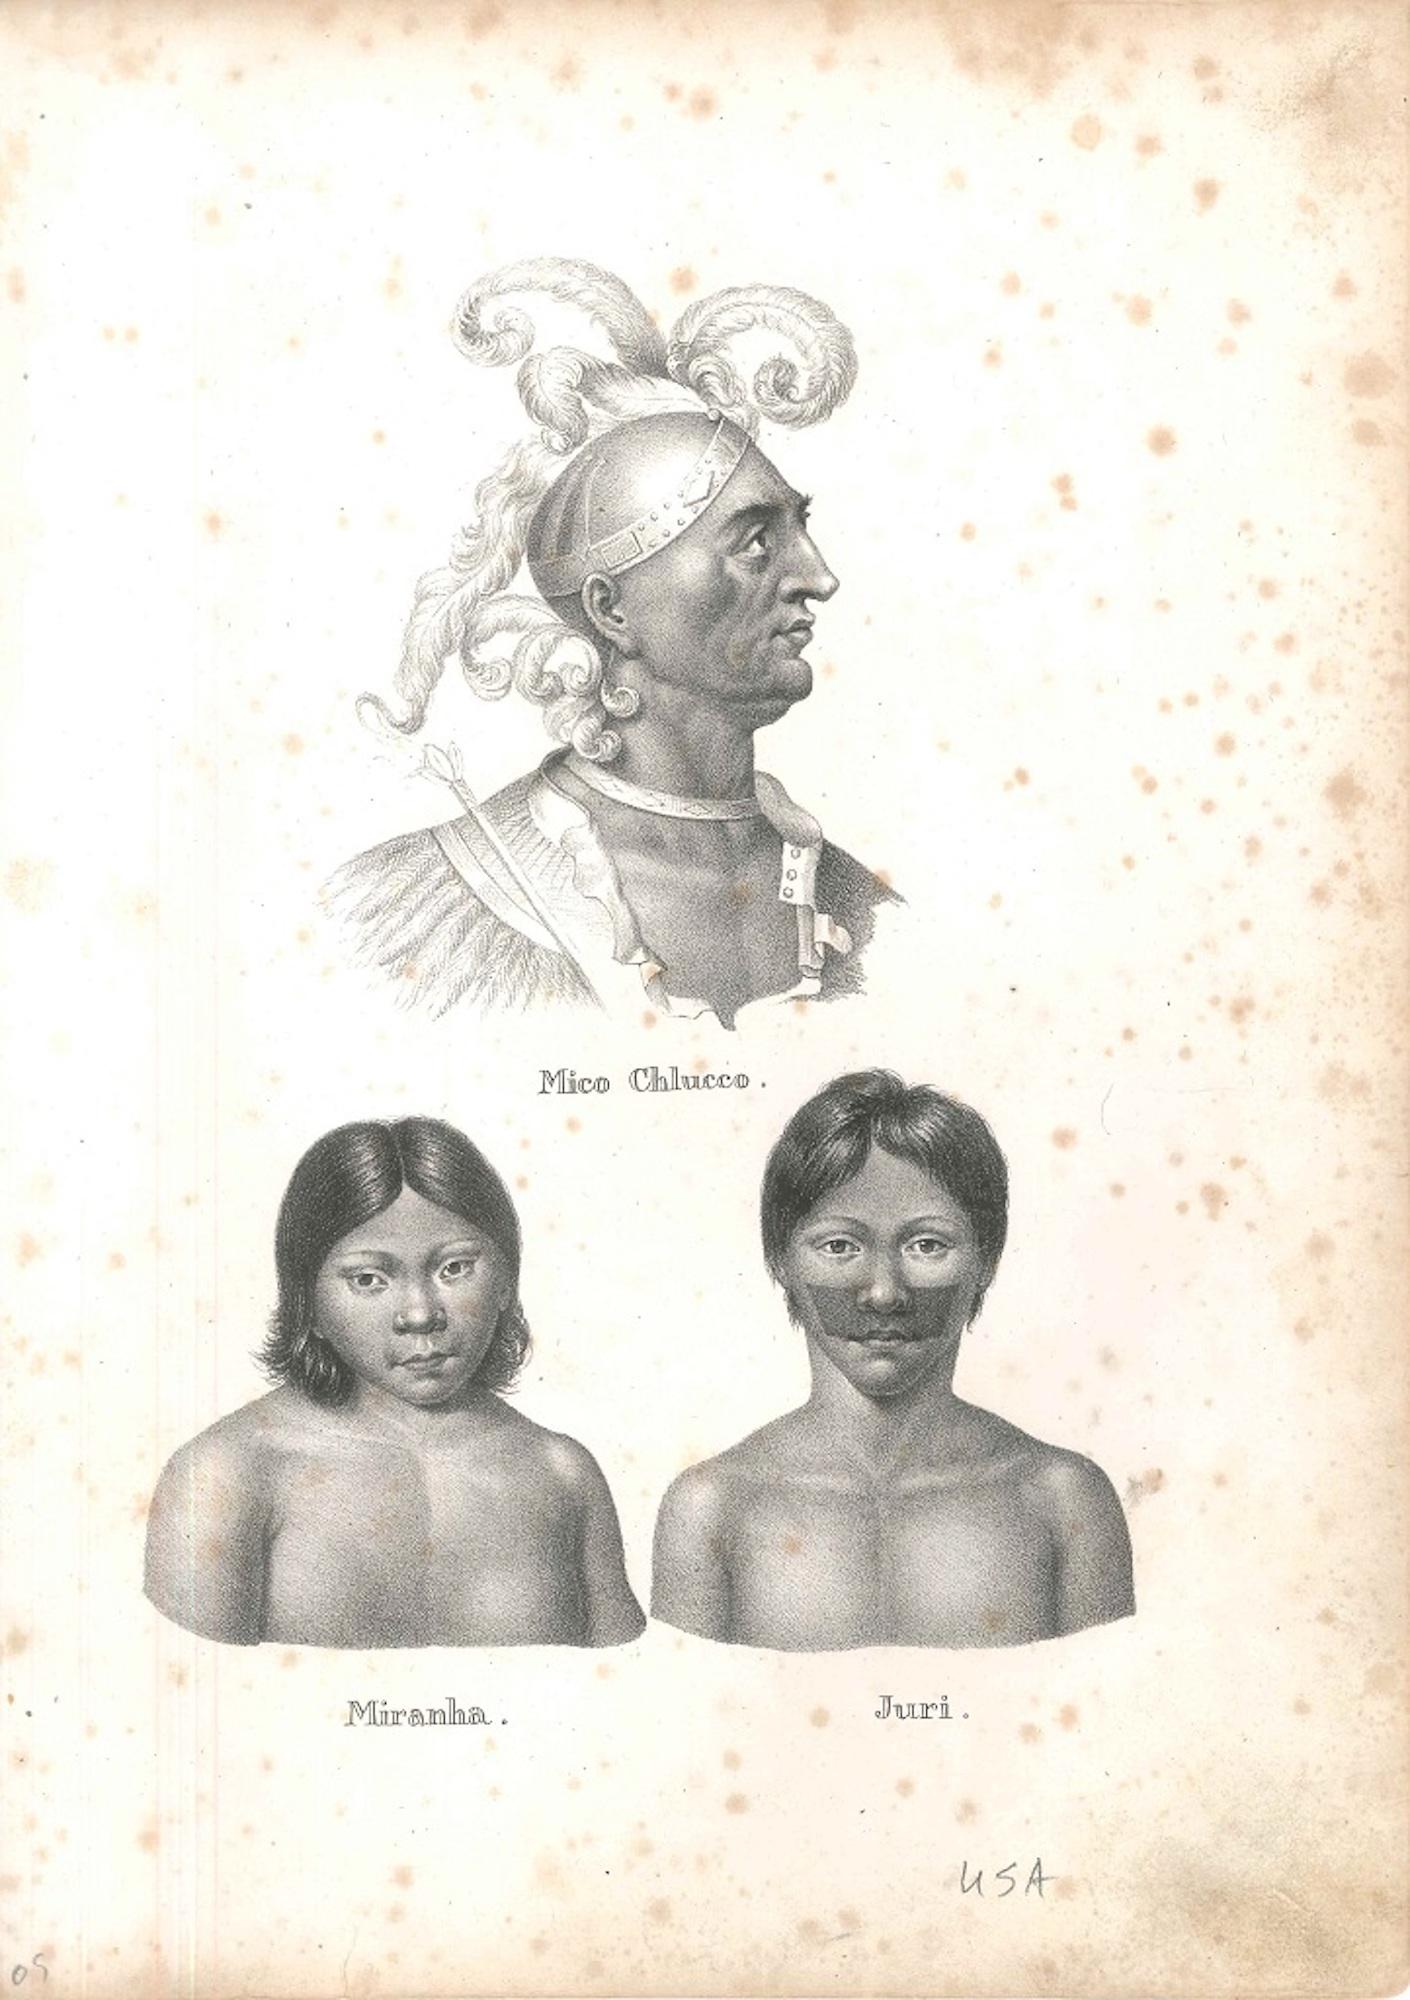 Unknown Figurative Print - Mico Chlucco, Miranha, Juri - Original Lithograph 1827 ca.